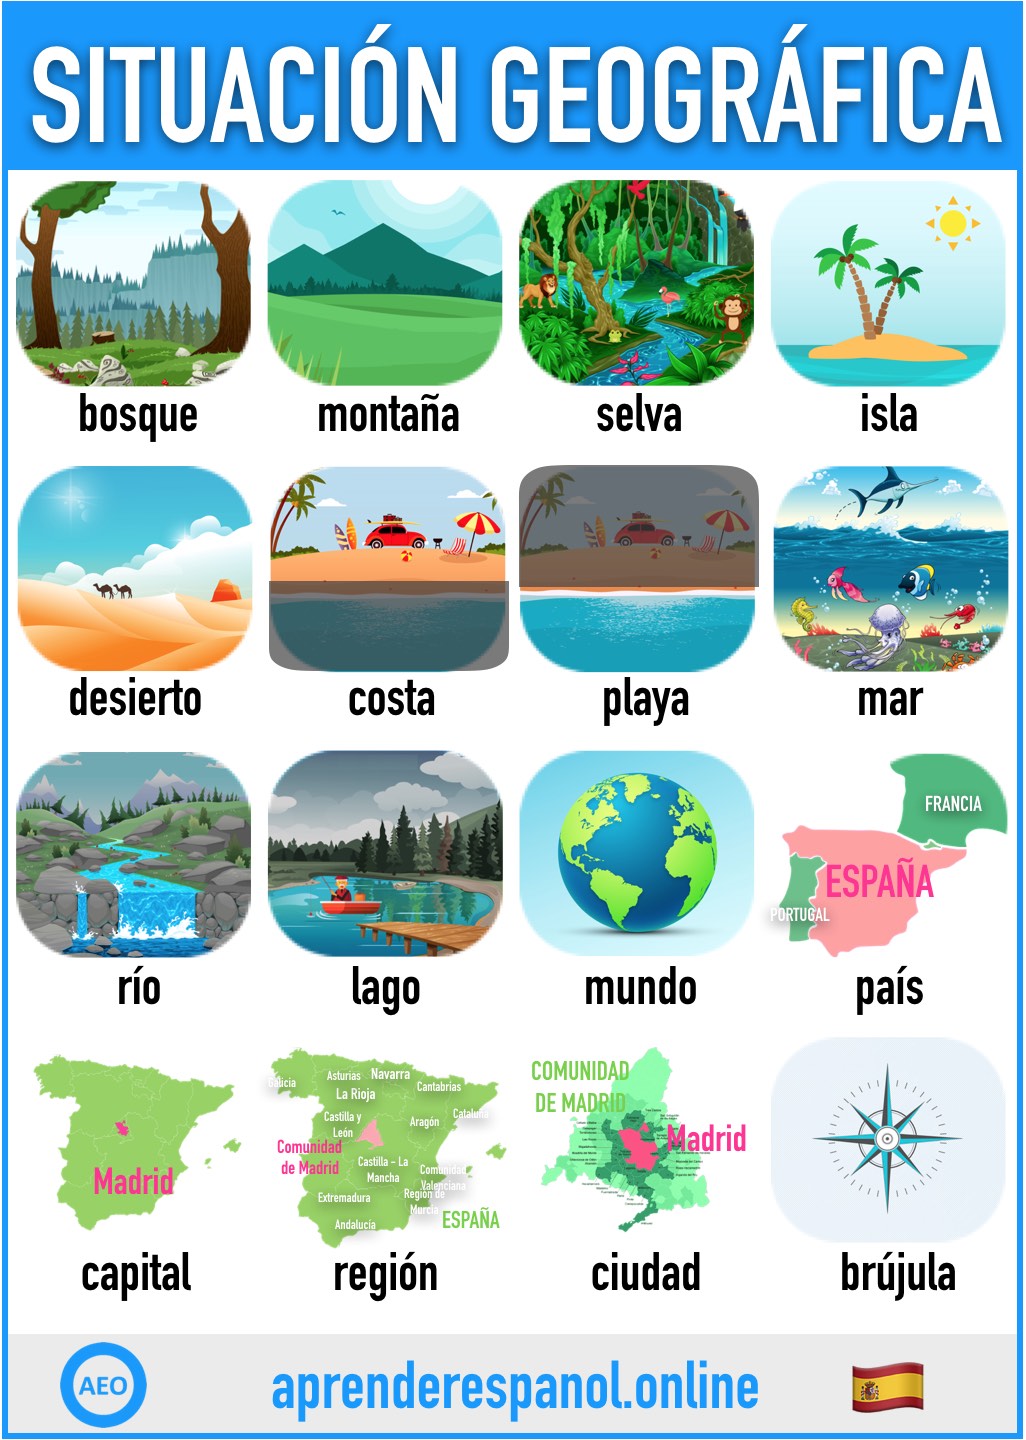 situación geográfica en español - aprender español online - vocabulario de la situación geográfica en español